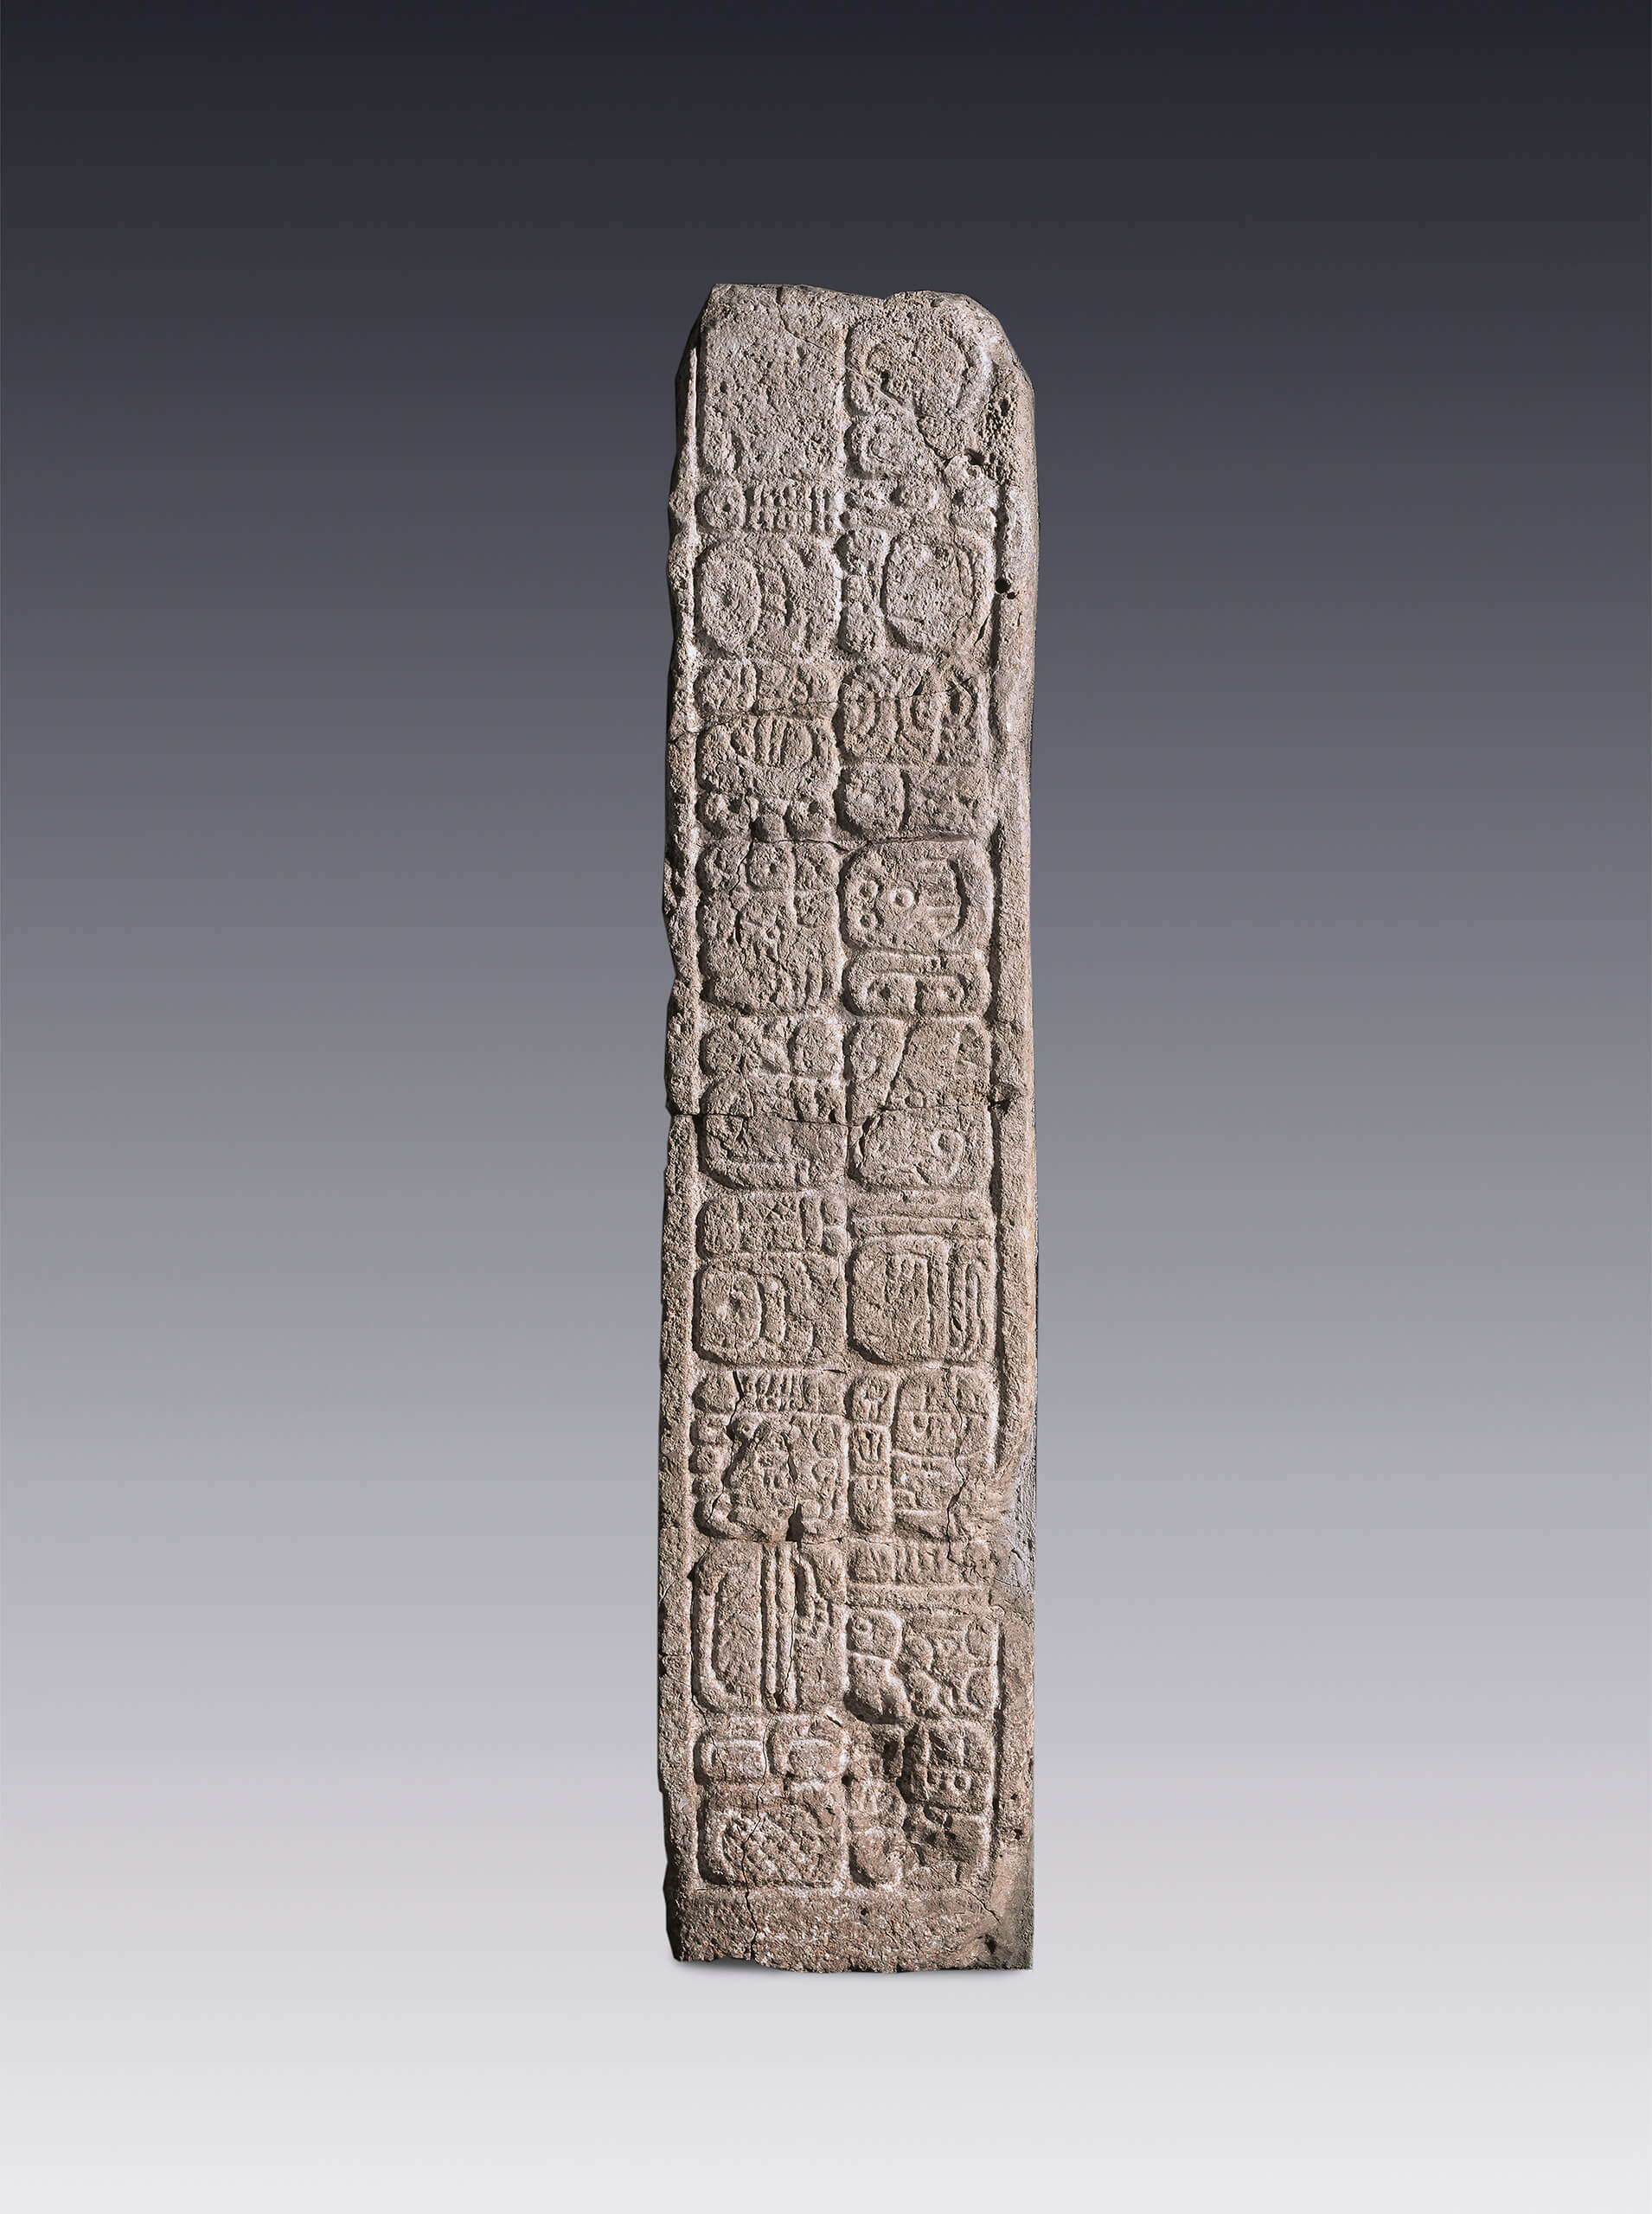 Jamba de piedra con inscripciones jeroglíficas | El México antiguo. Salas de Arte Prehispánico | Museo Amparo, Puebla